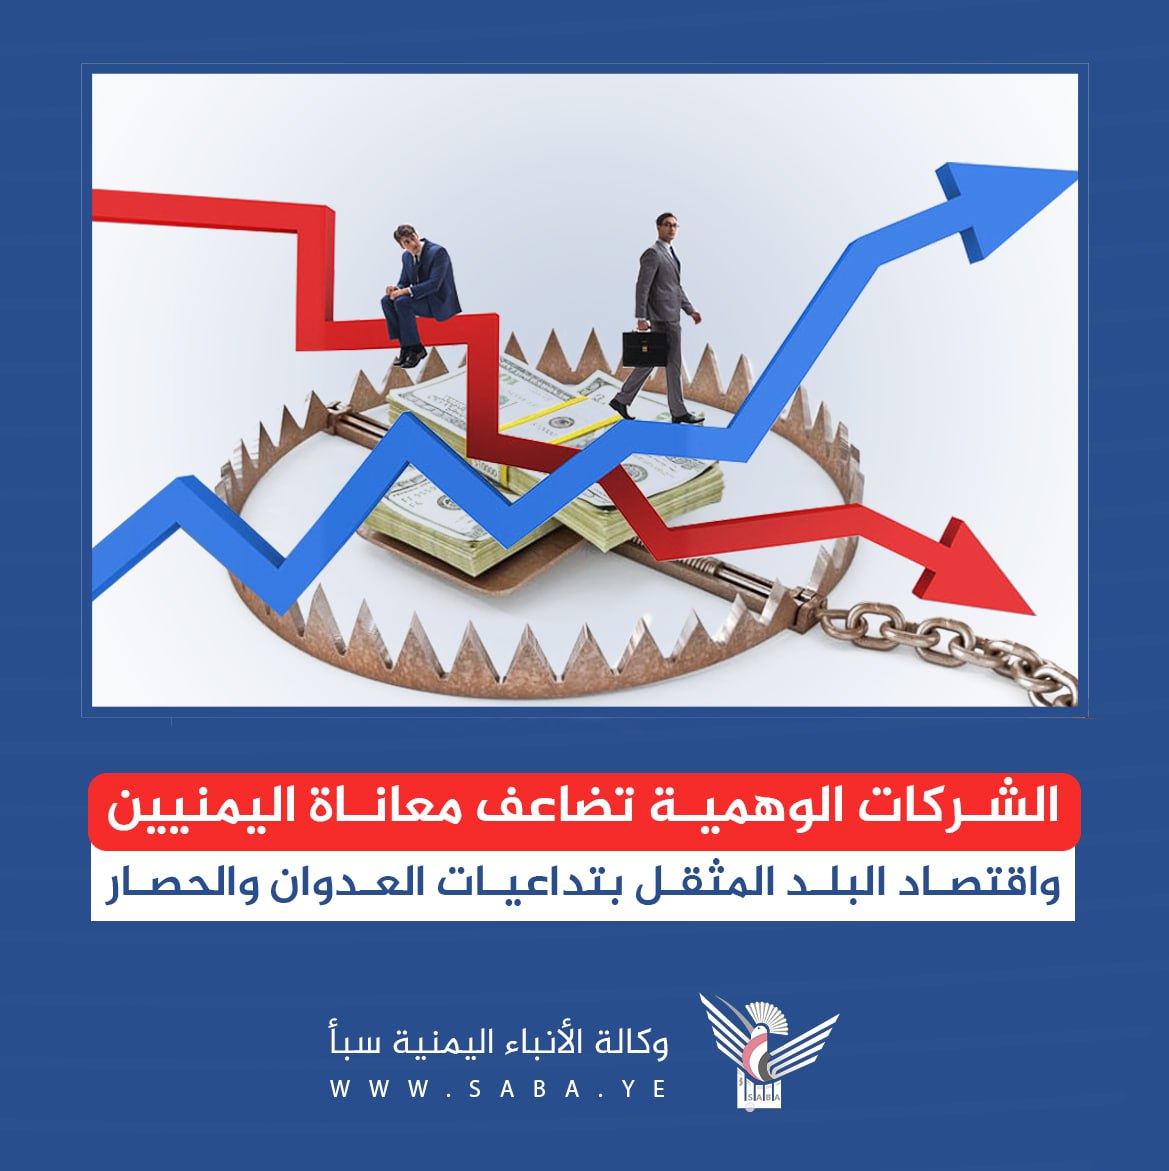 Empresas falsas multiplican el sufrimiento de los yemenítas y la economía del país, que carga con las repercusiones de la agresión y el bloqueo